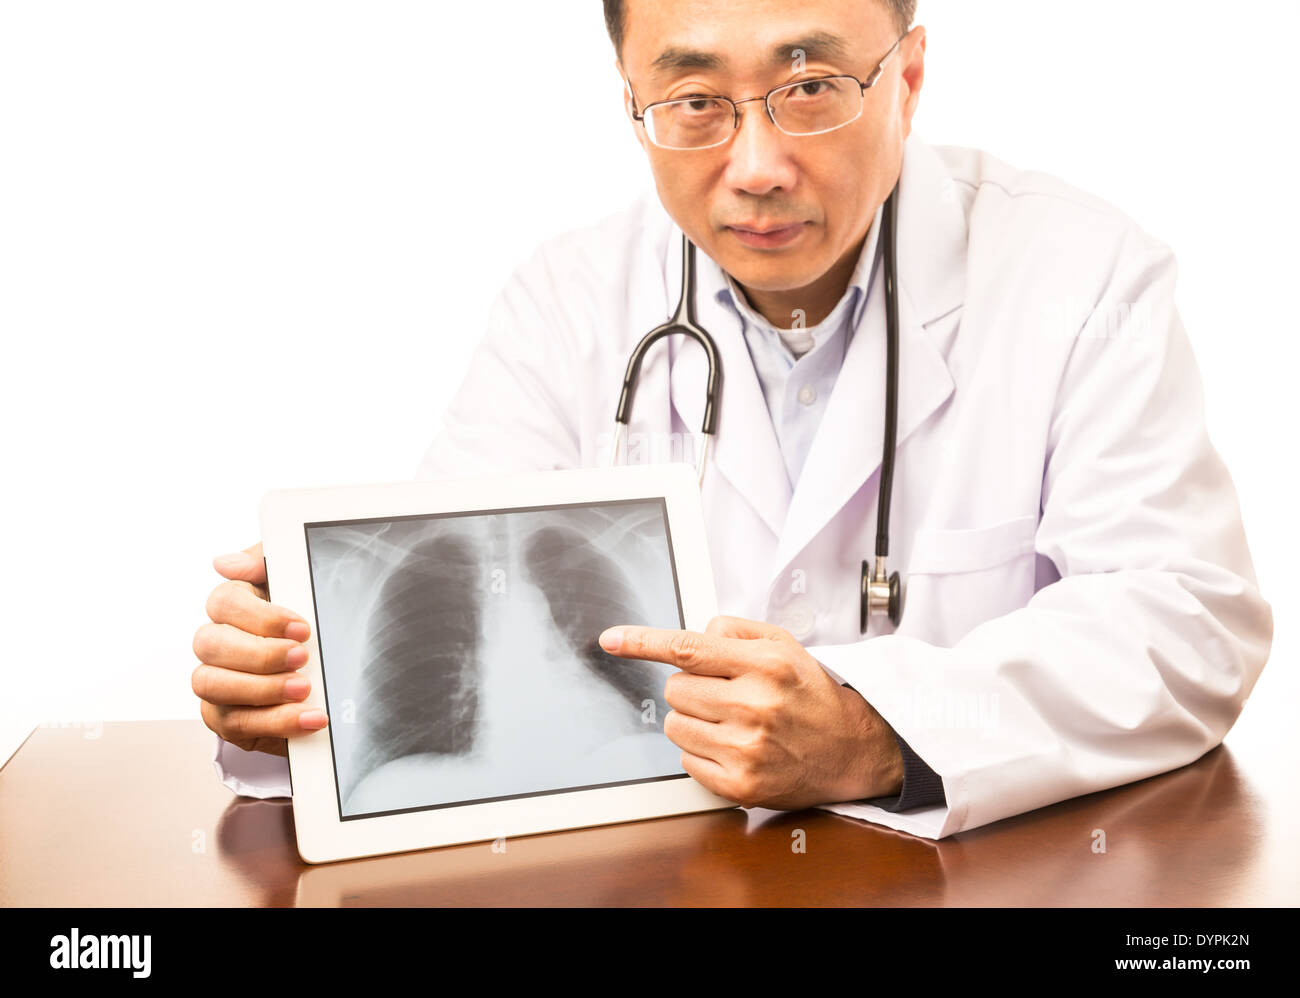 Asiatischen Arzt hält eine Tablette mit einem Röntgenbild Stockfoto